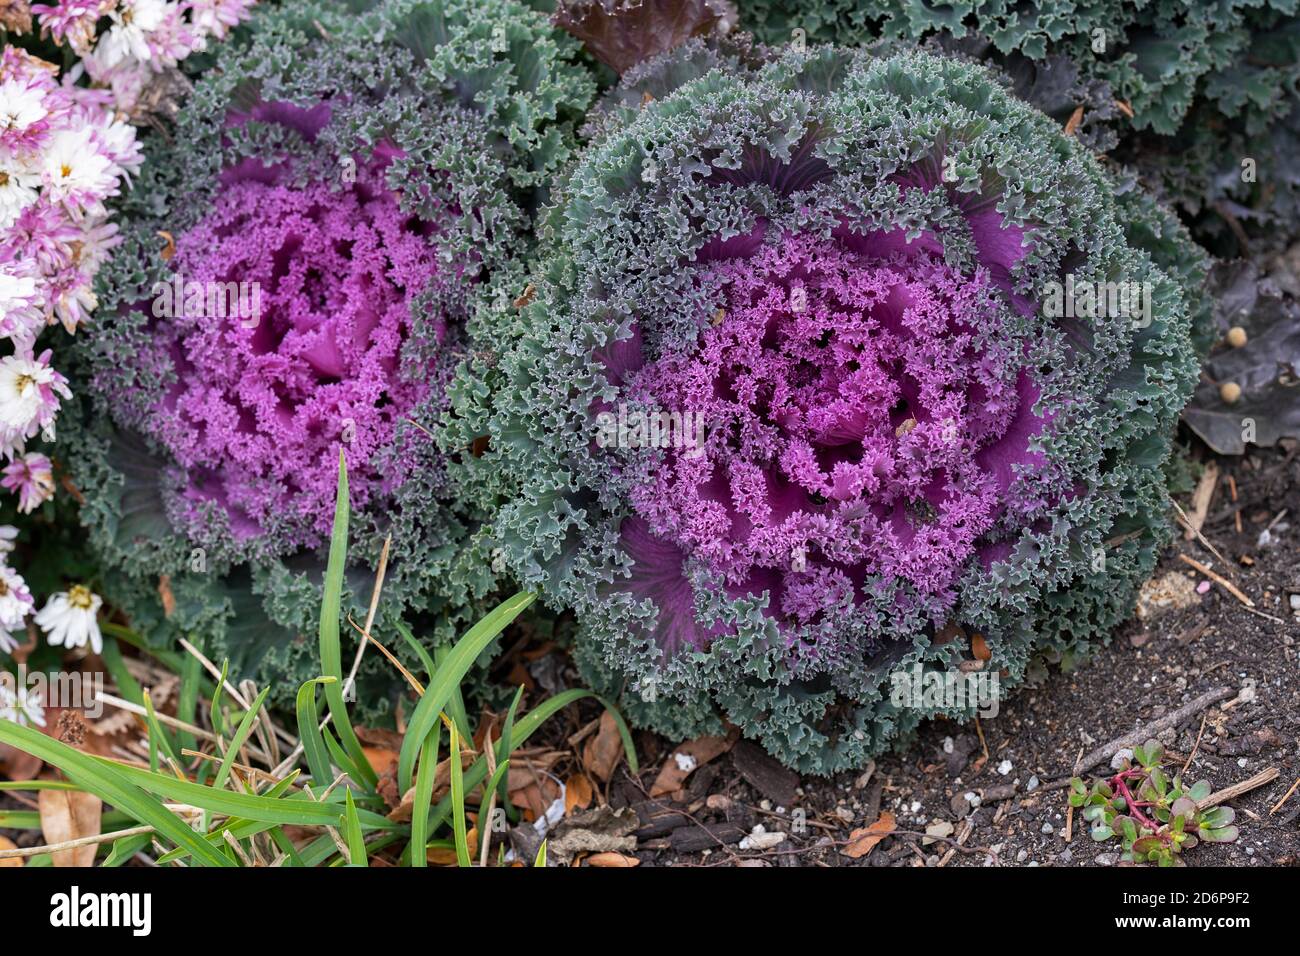 Purple Nagoya Red or Nagoya Rose, Ornamental Flowering Kale, Brassica oleracea growing outside in the garden Stock Photo